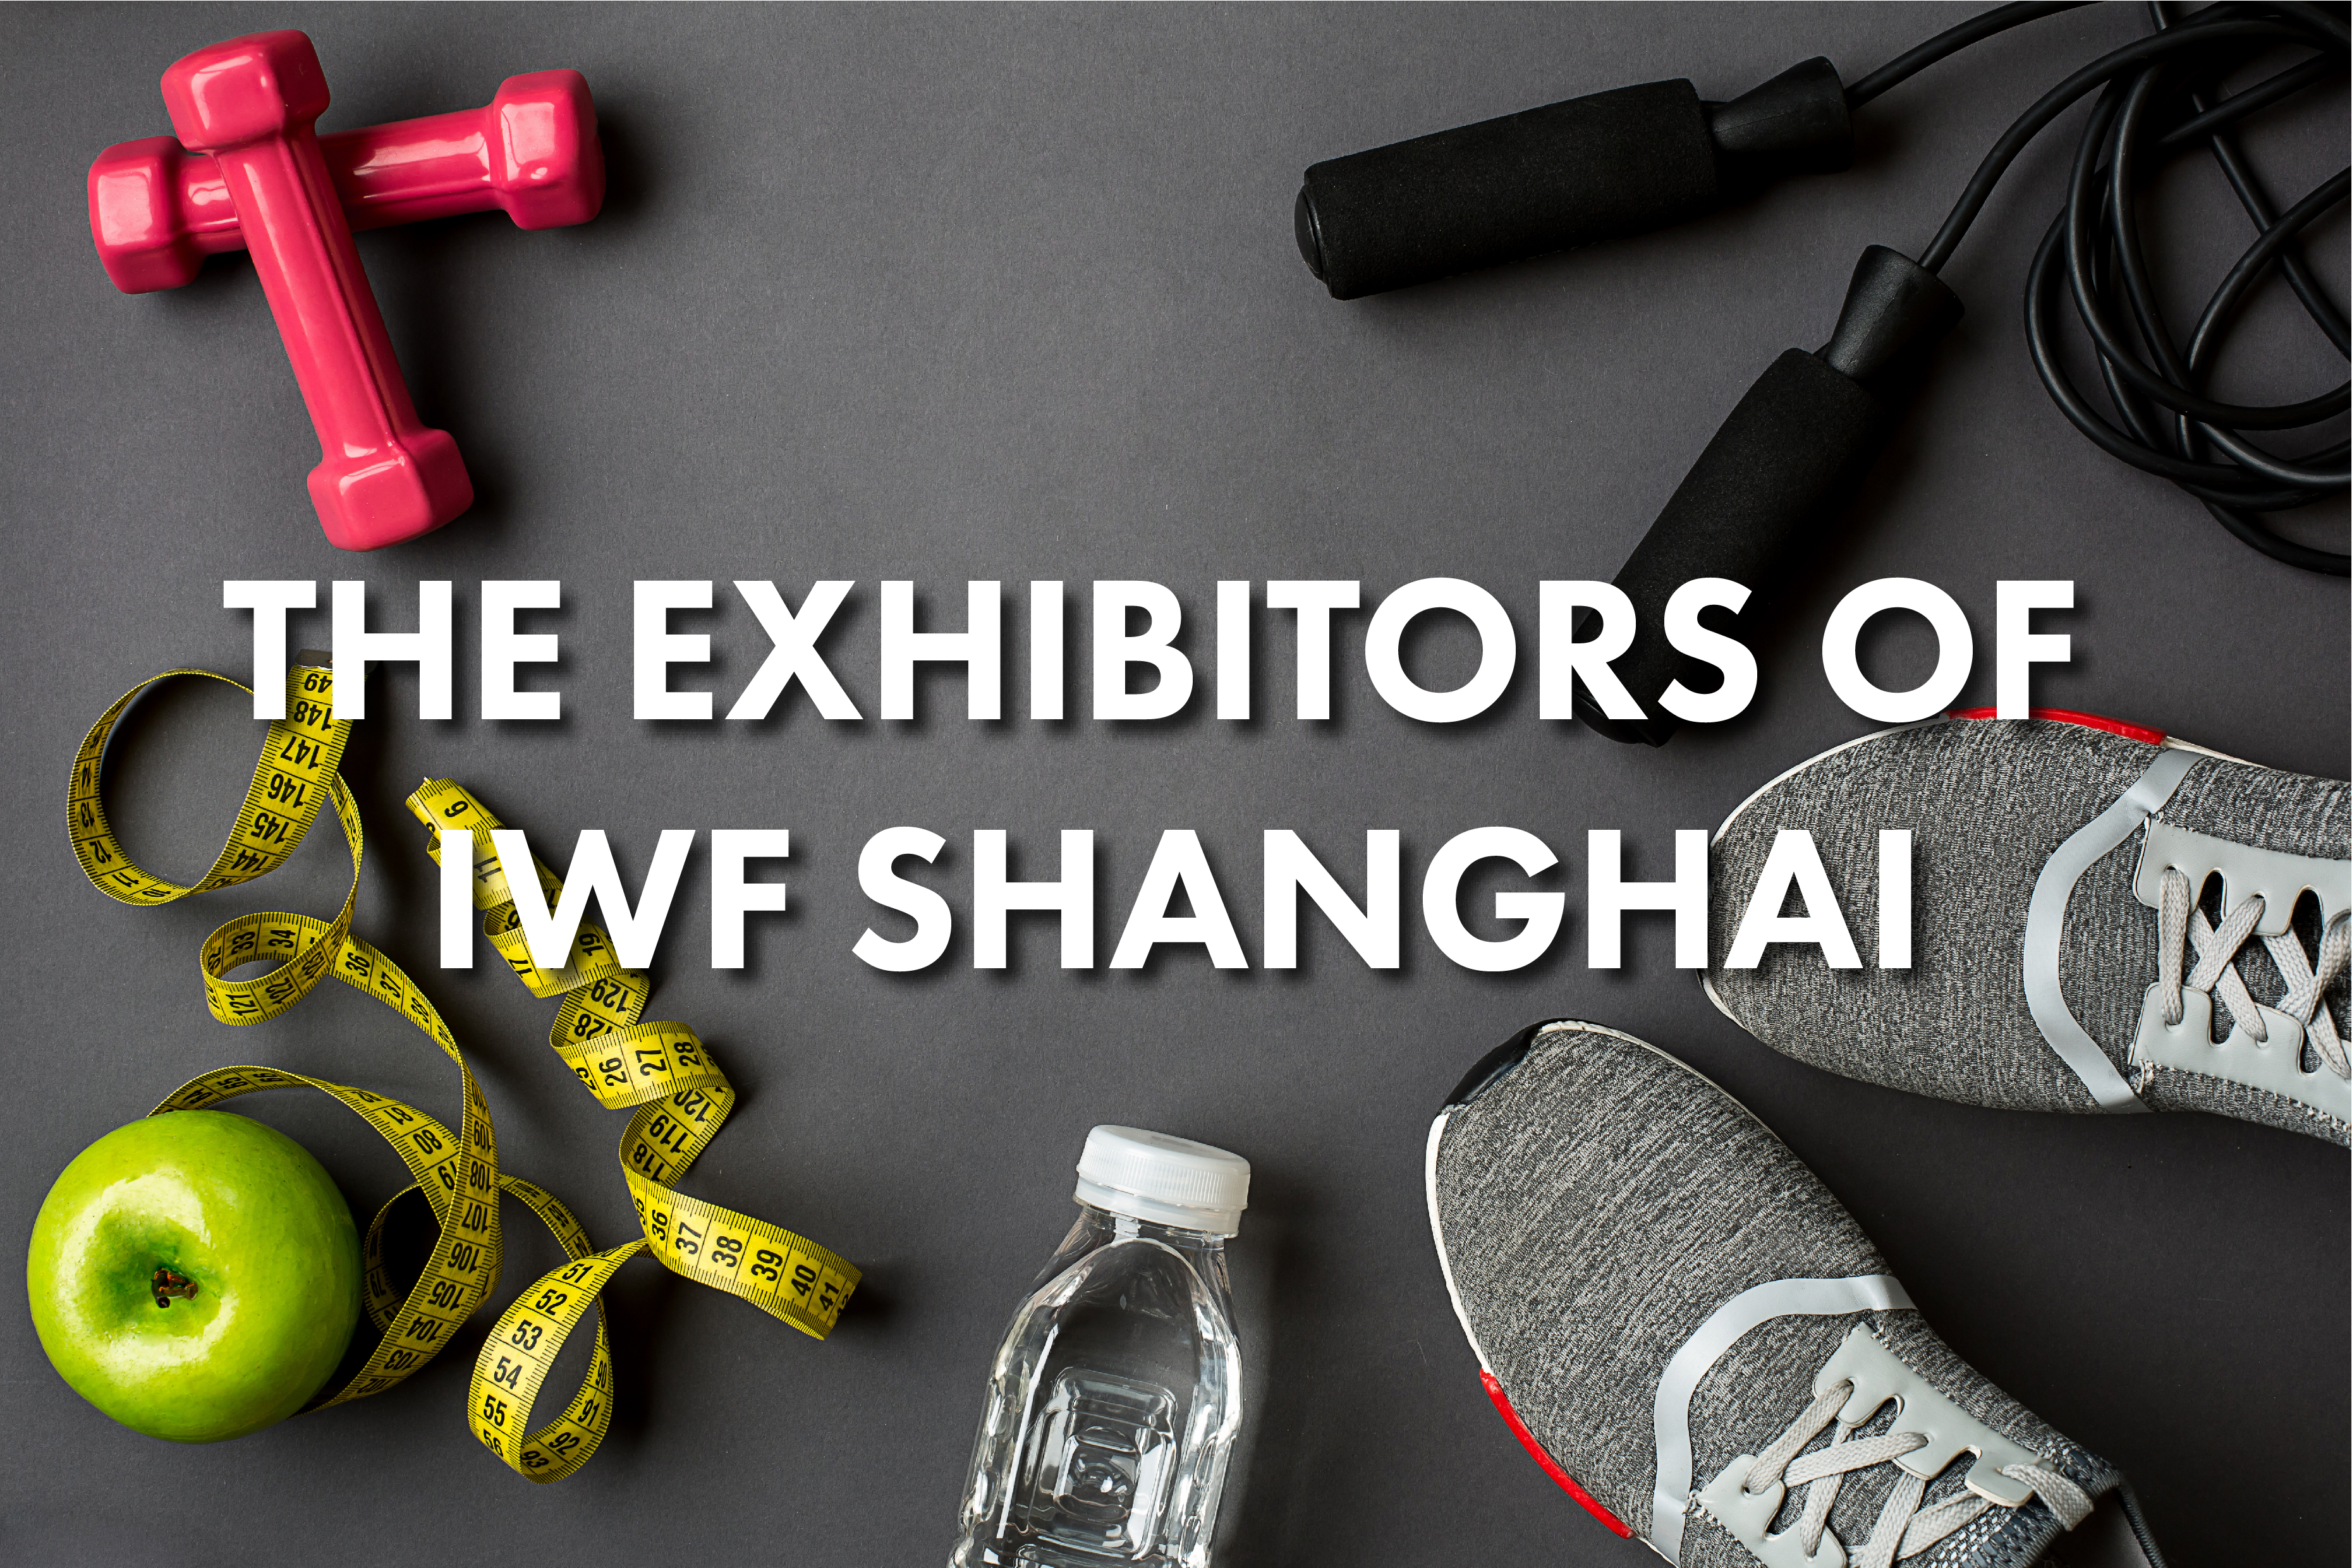 IWF SHANGHAI 참가업체